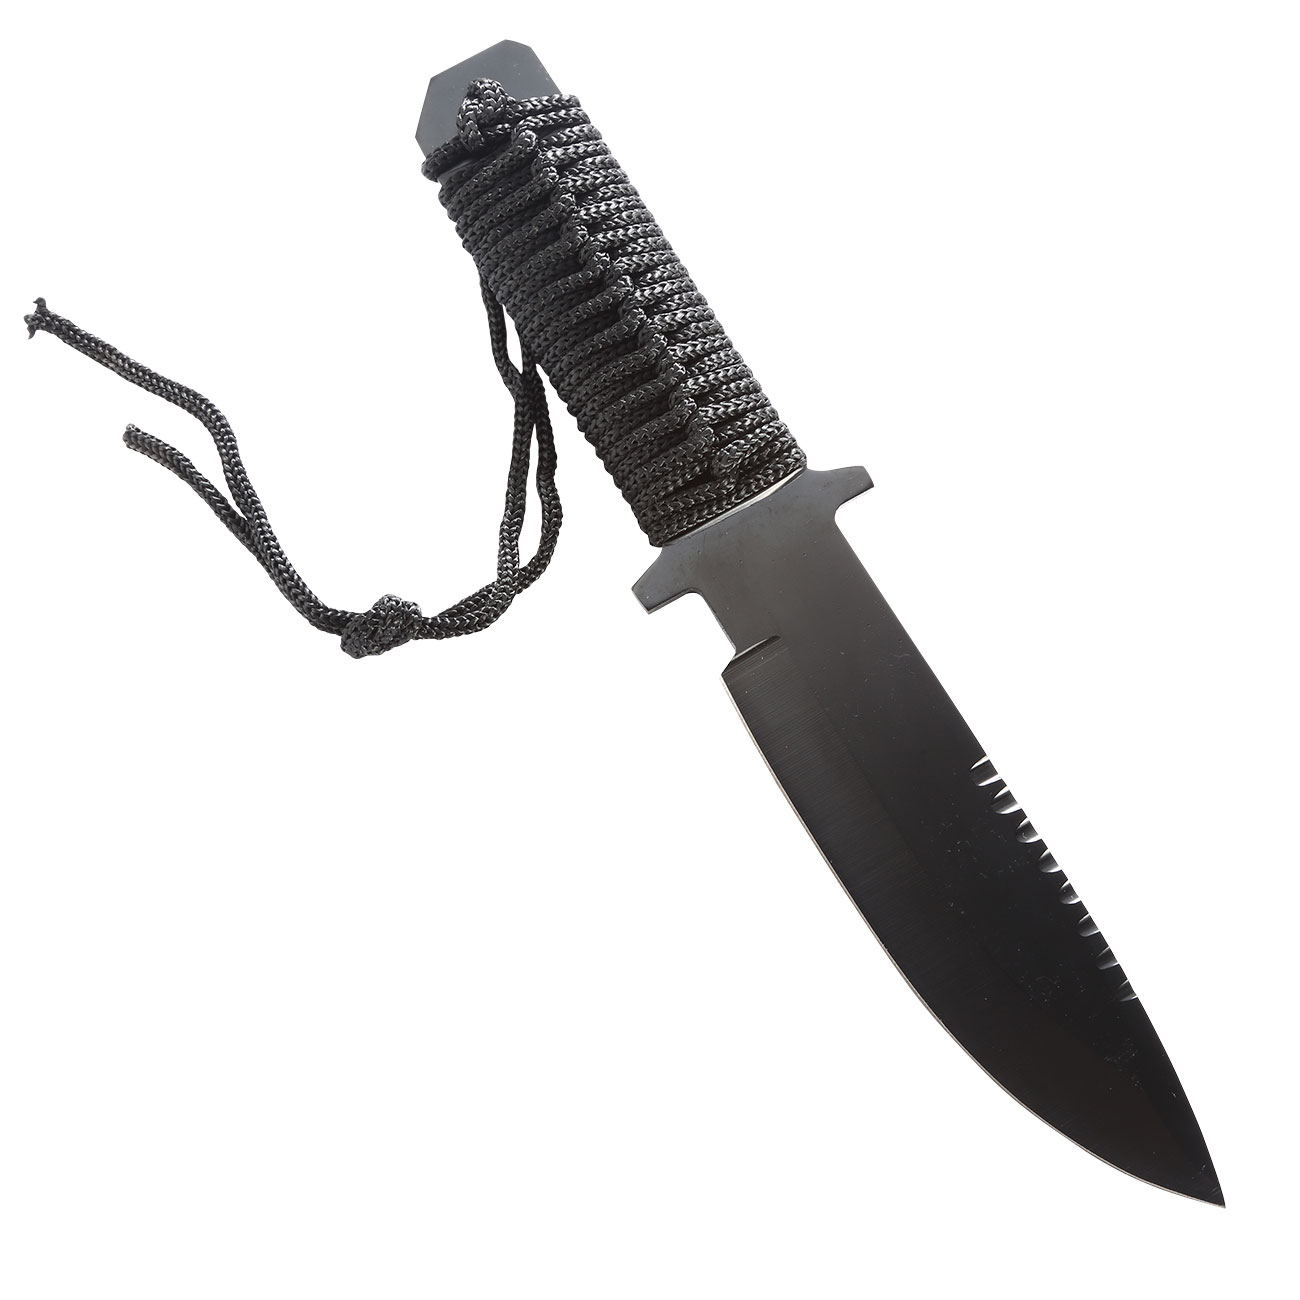  Combat Messer Recon 10 schwarz  (Modell A) Bild 1